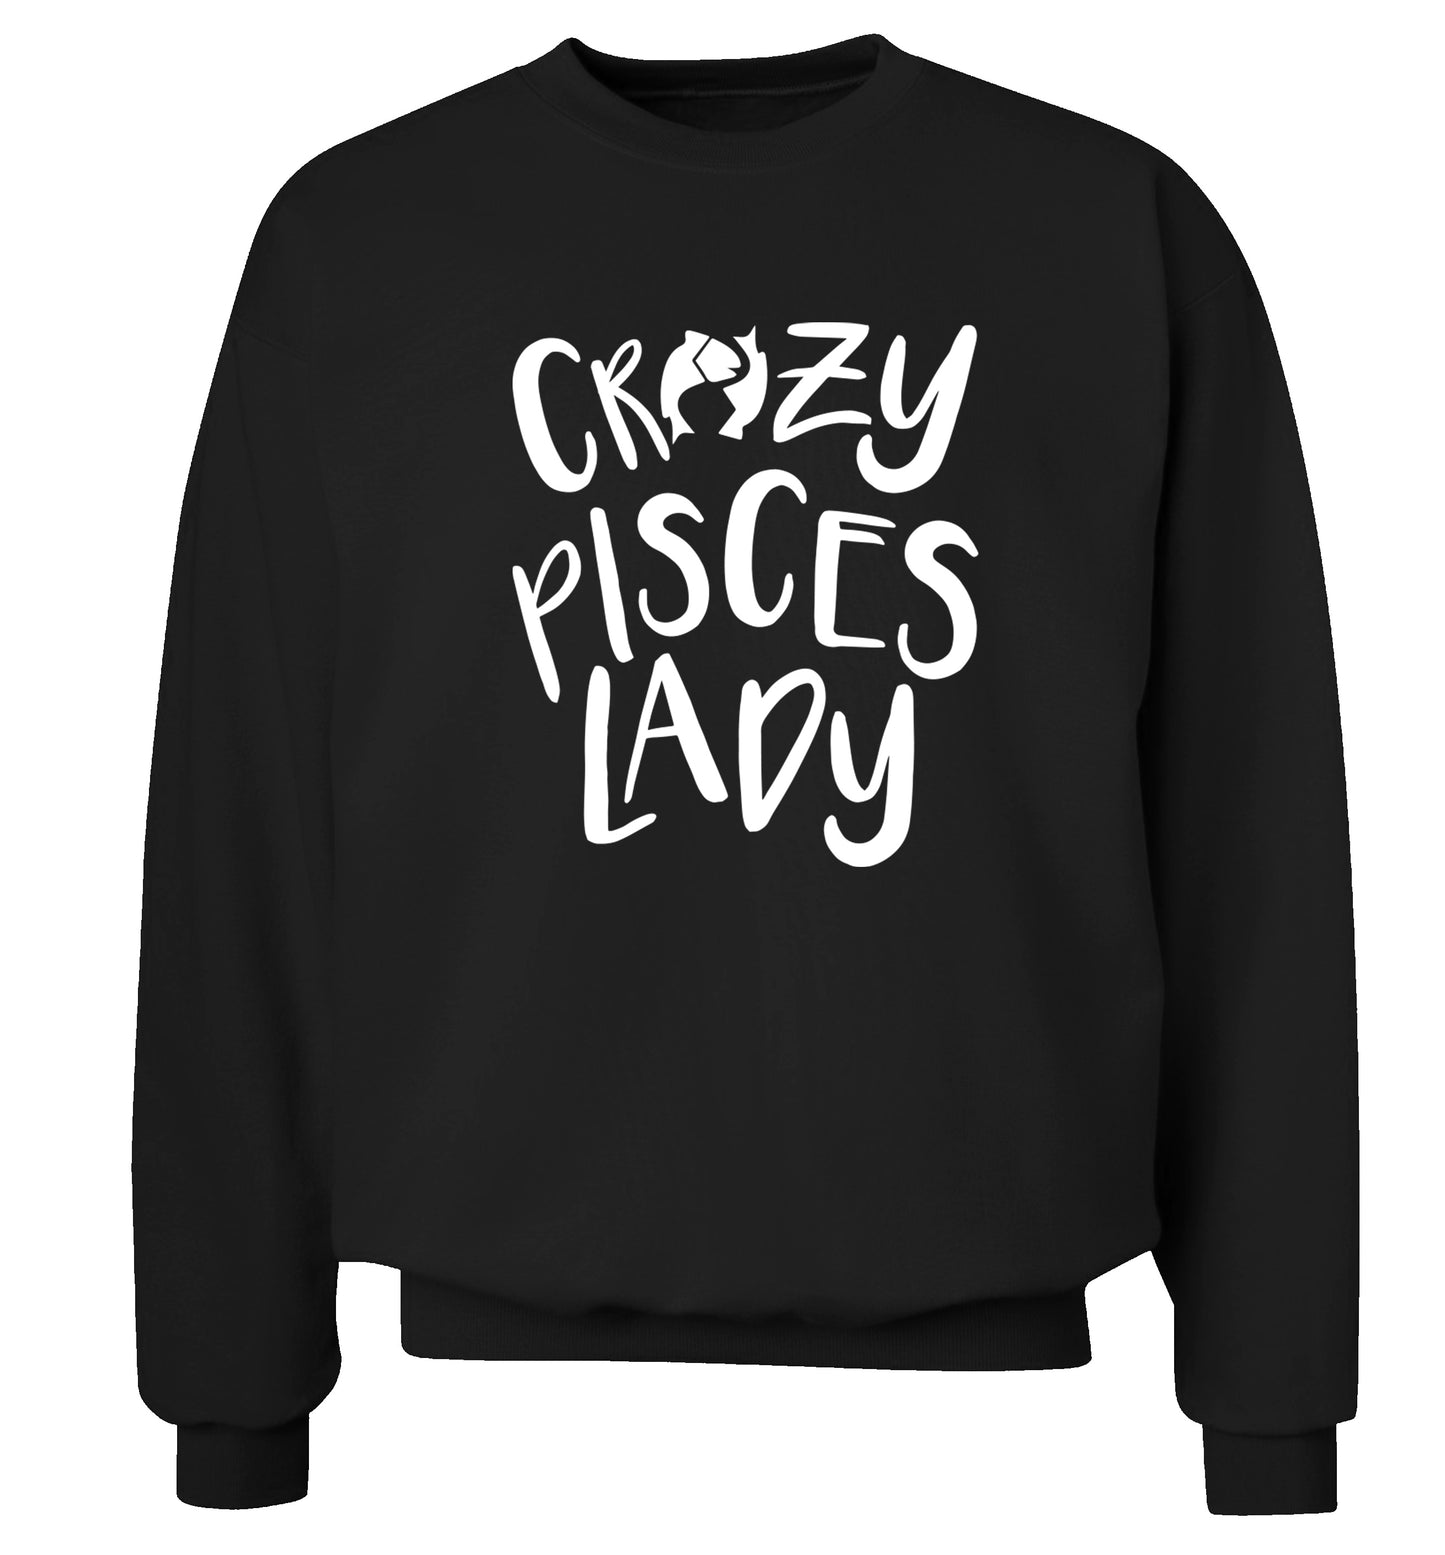 Crazy pisces Lady Adult's unisex black Sweater 2XL